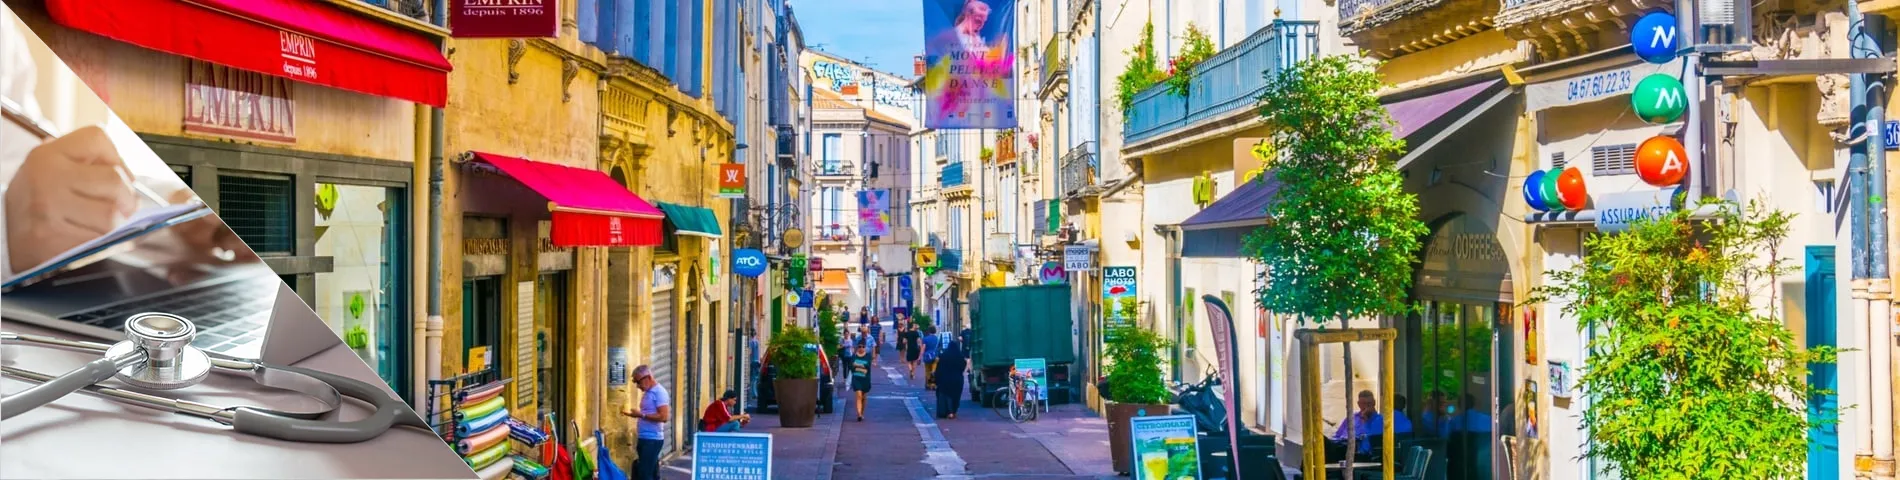 Montpellier - Francuski dla Lekarzy i Pielęgniarek 